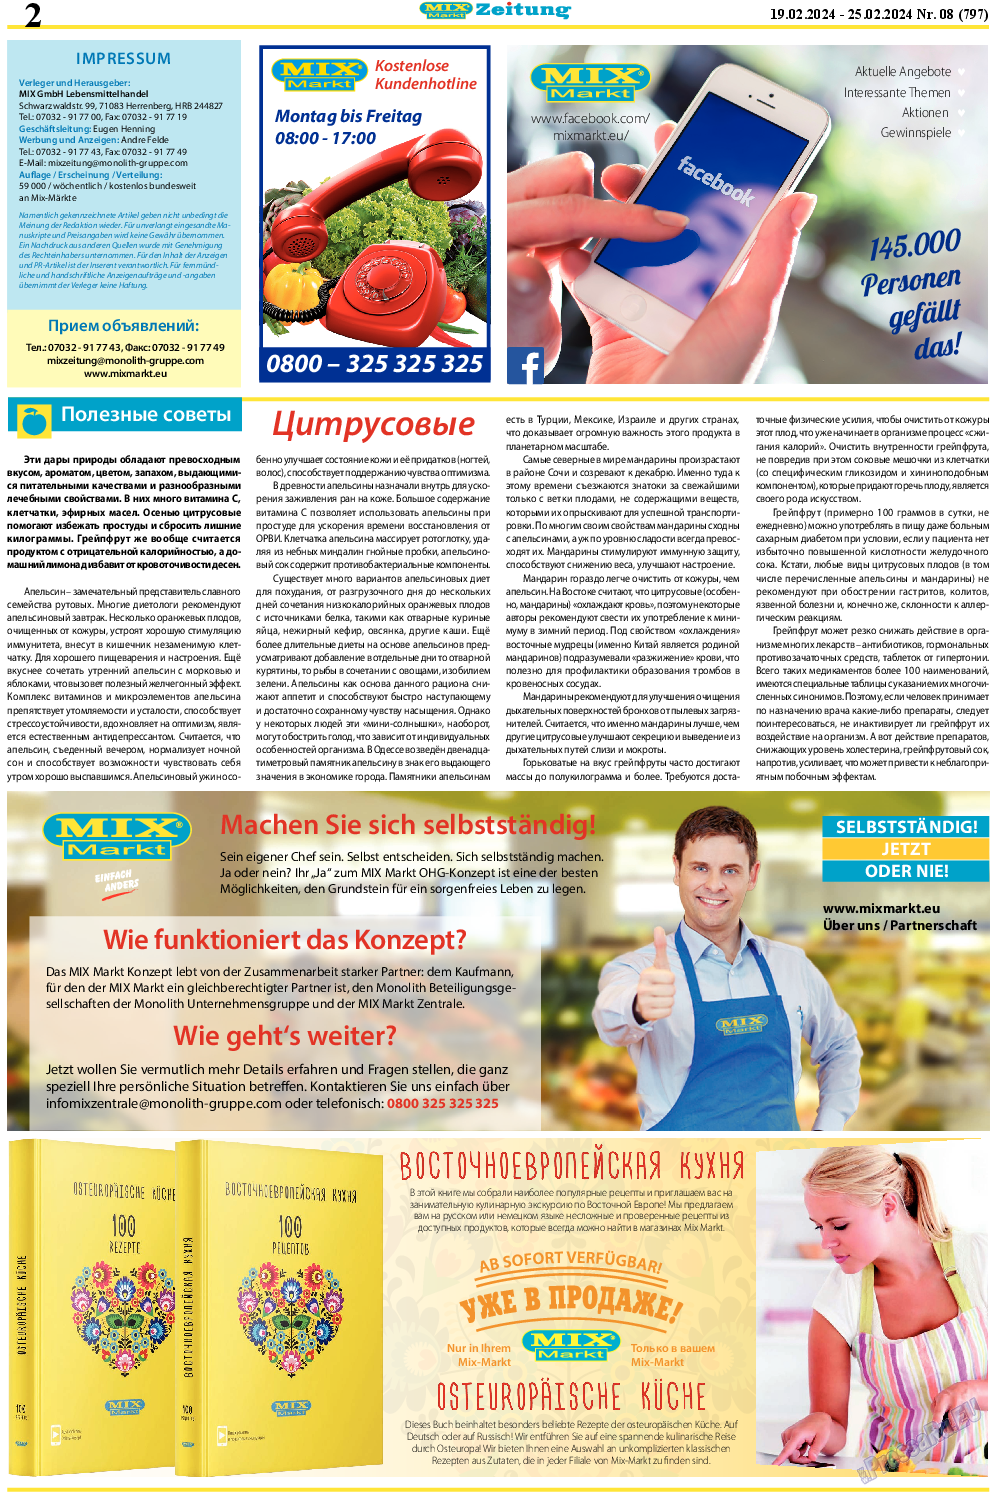 MIX-Markt Zeitung, газета. 2024 №8 стр.2